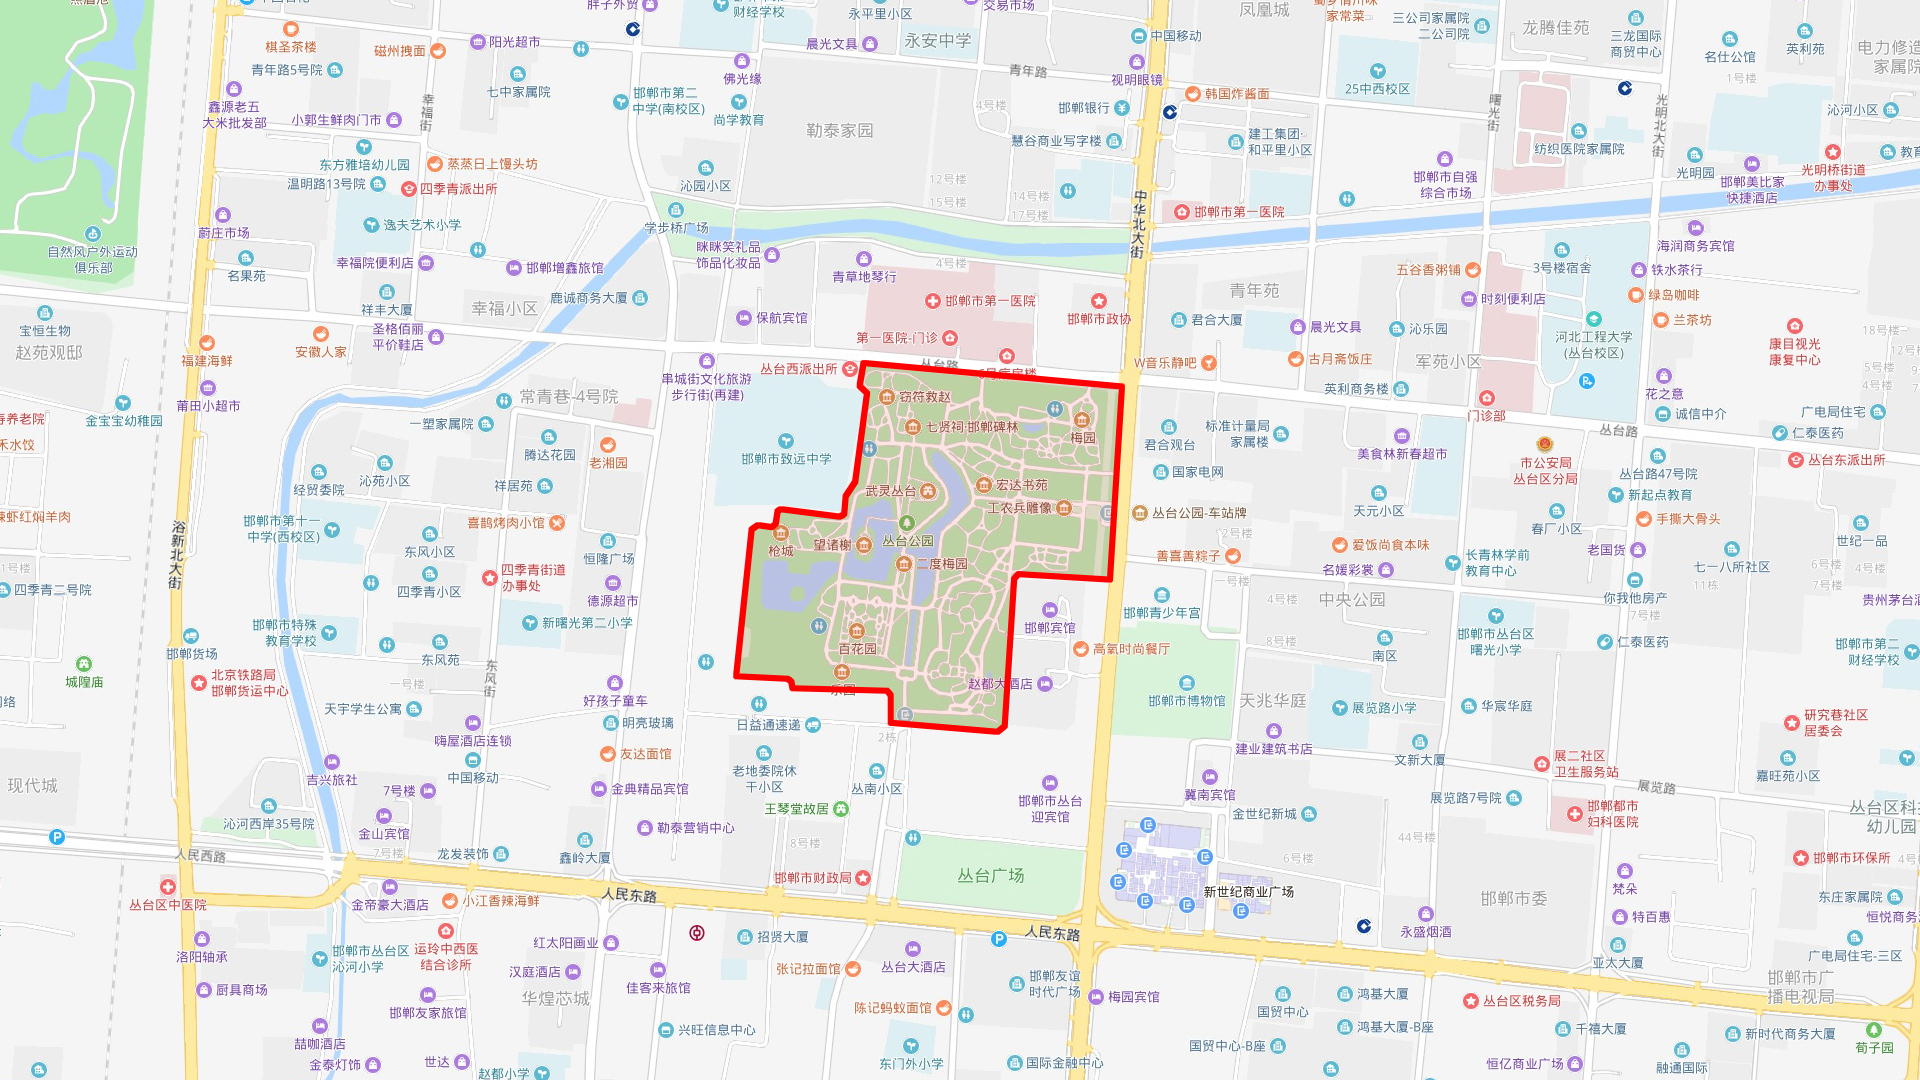 丛台公园的地理位置十分优越,位于邯郸市中心,周围商业区很多,所以来图片